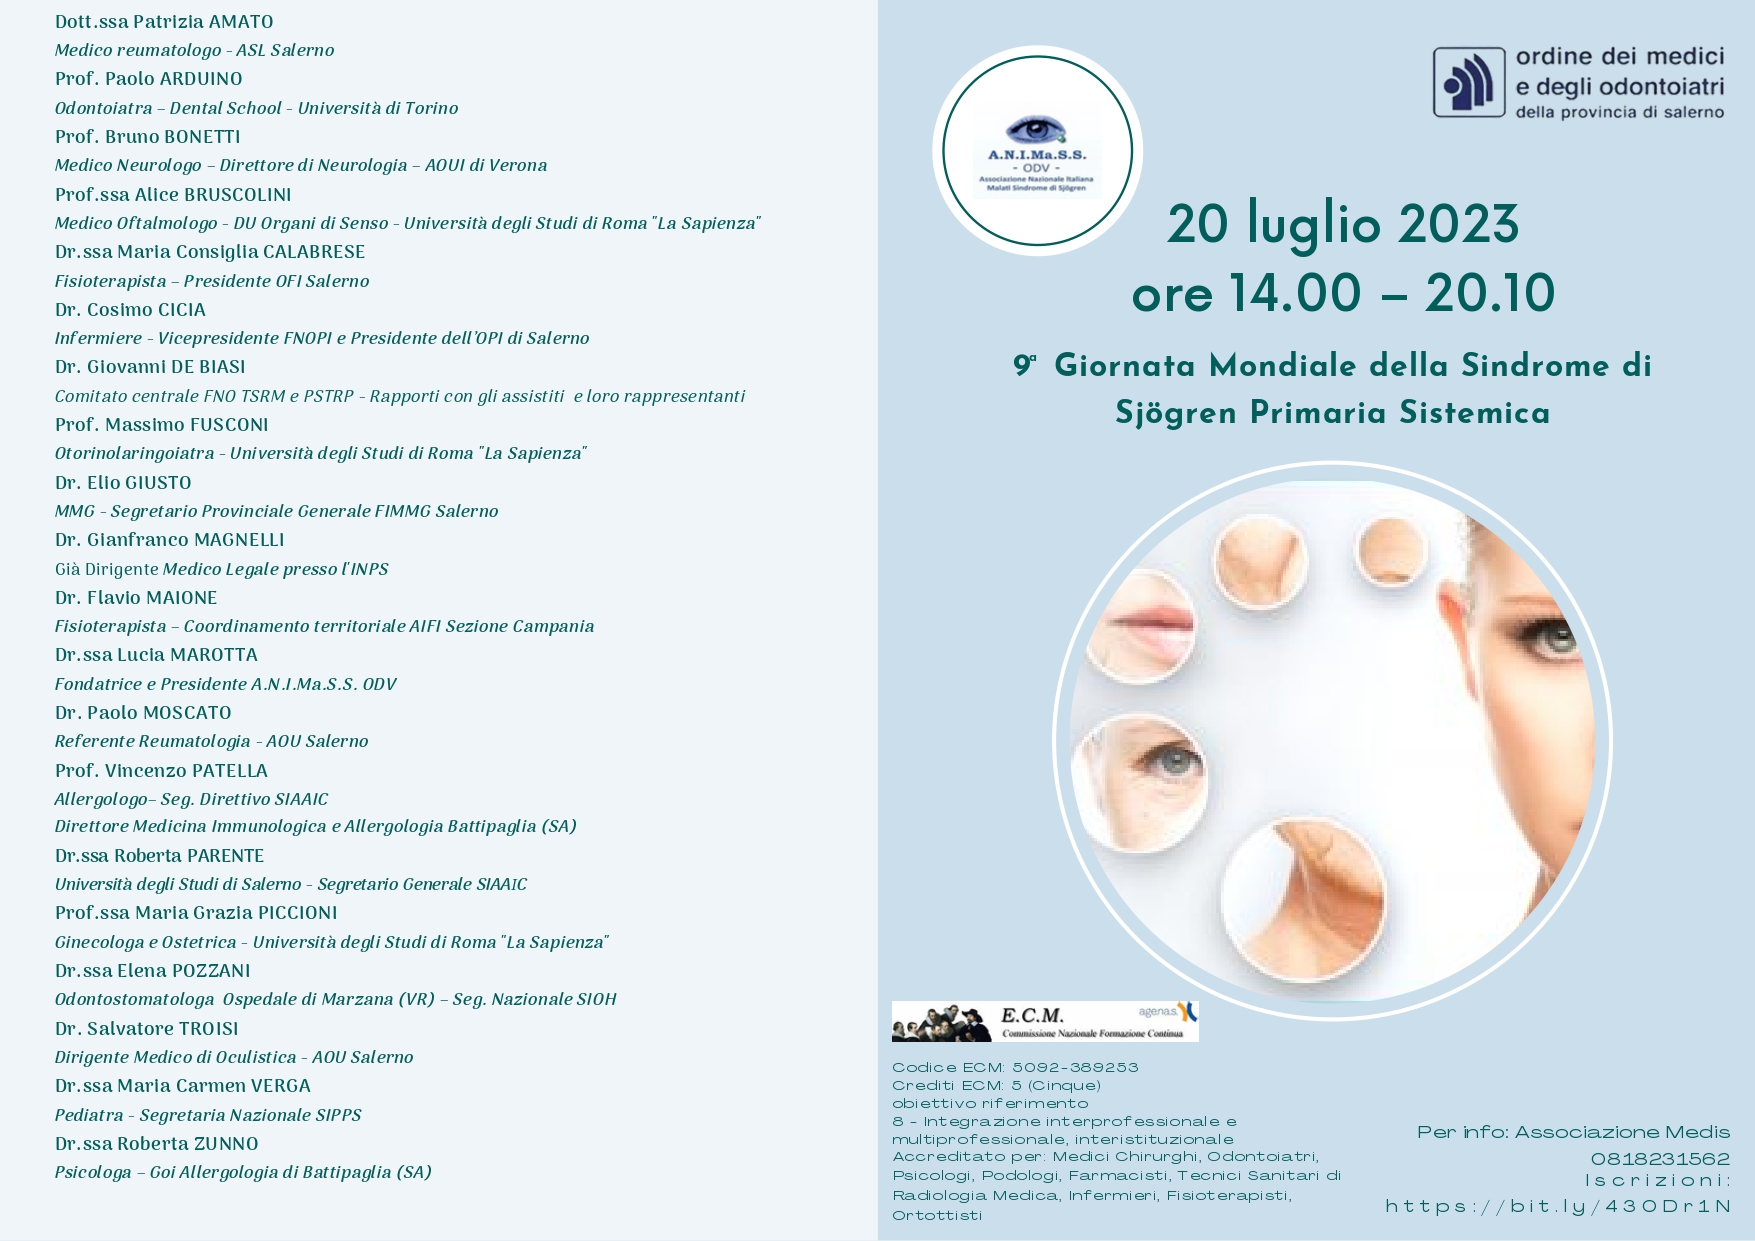 Salerno: all’Ordine dei Medici 9^ Giornata Mondiale Sindrome di Sjögren Primaria Sistemica ECM